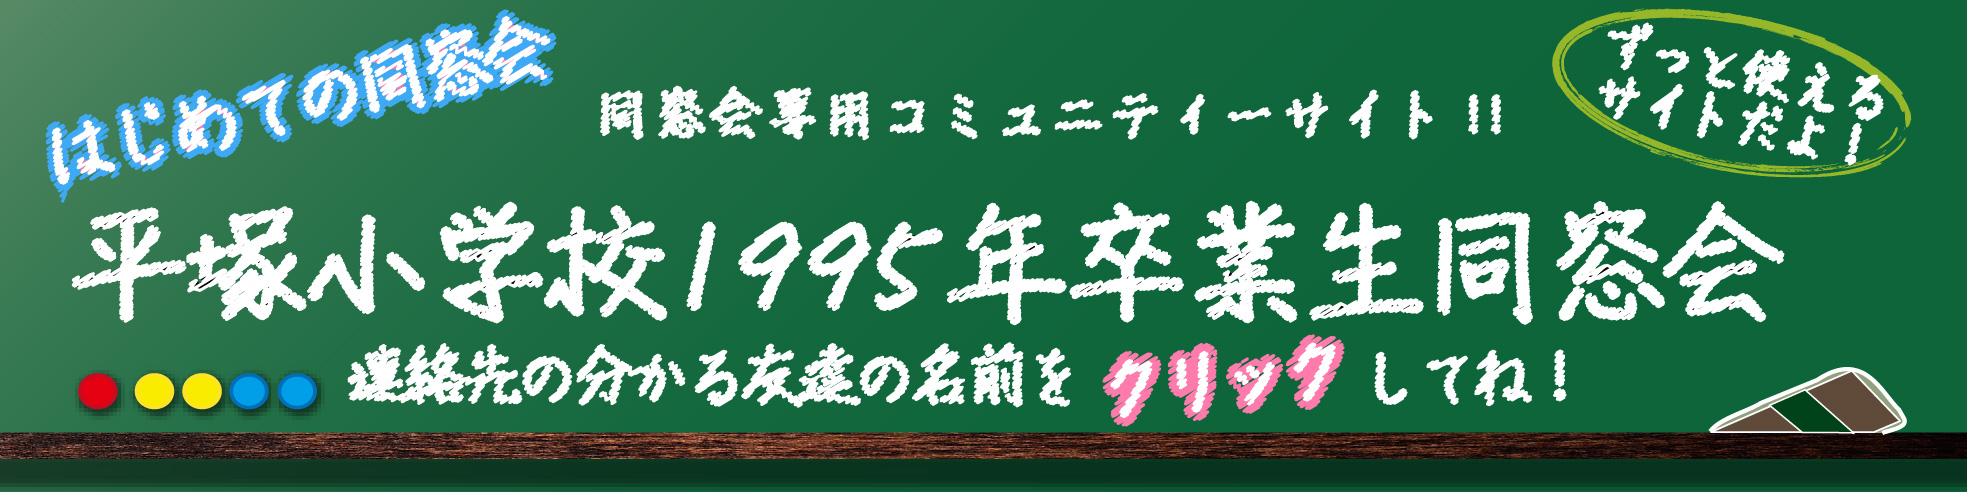 品川区立平塚小学校1995年卒業生同窓会